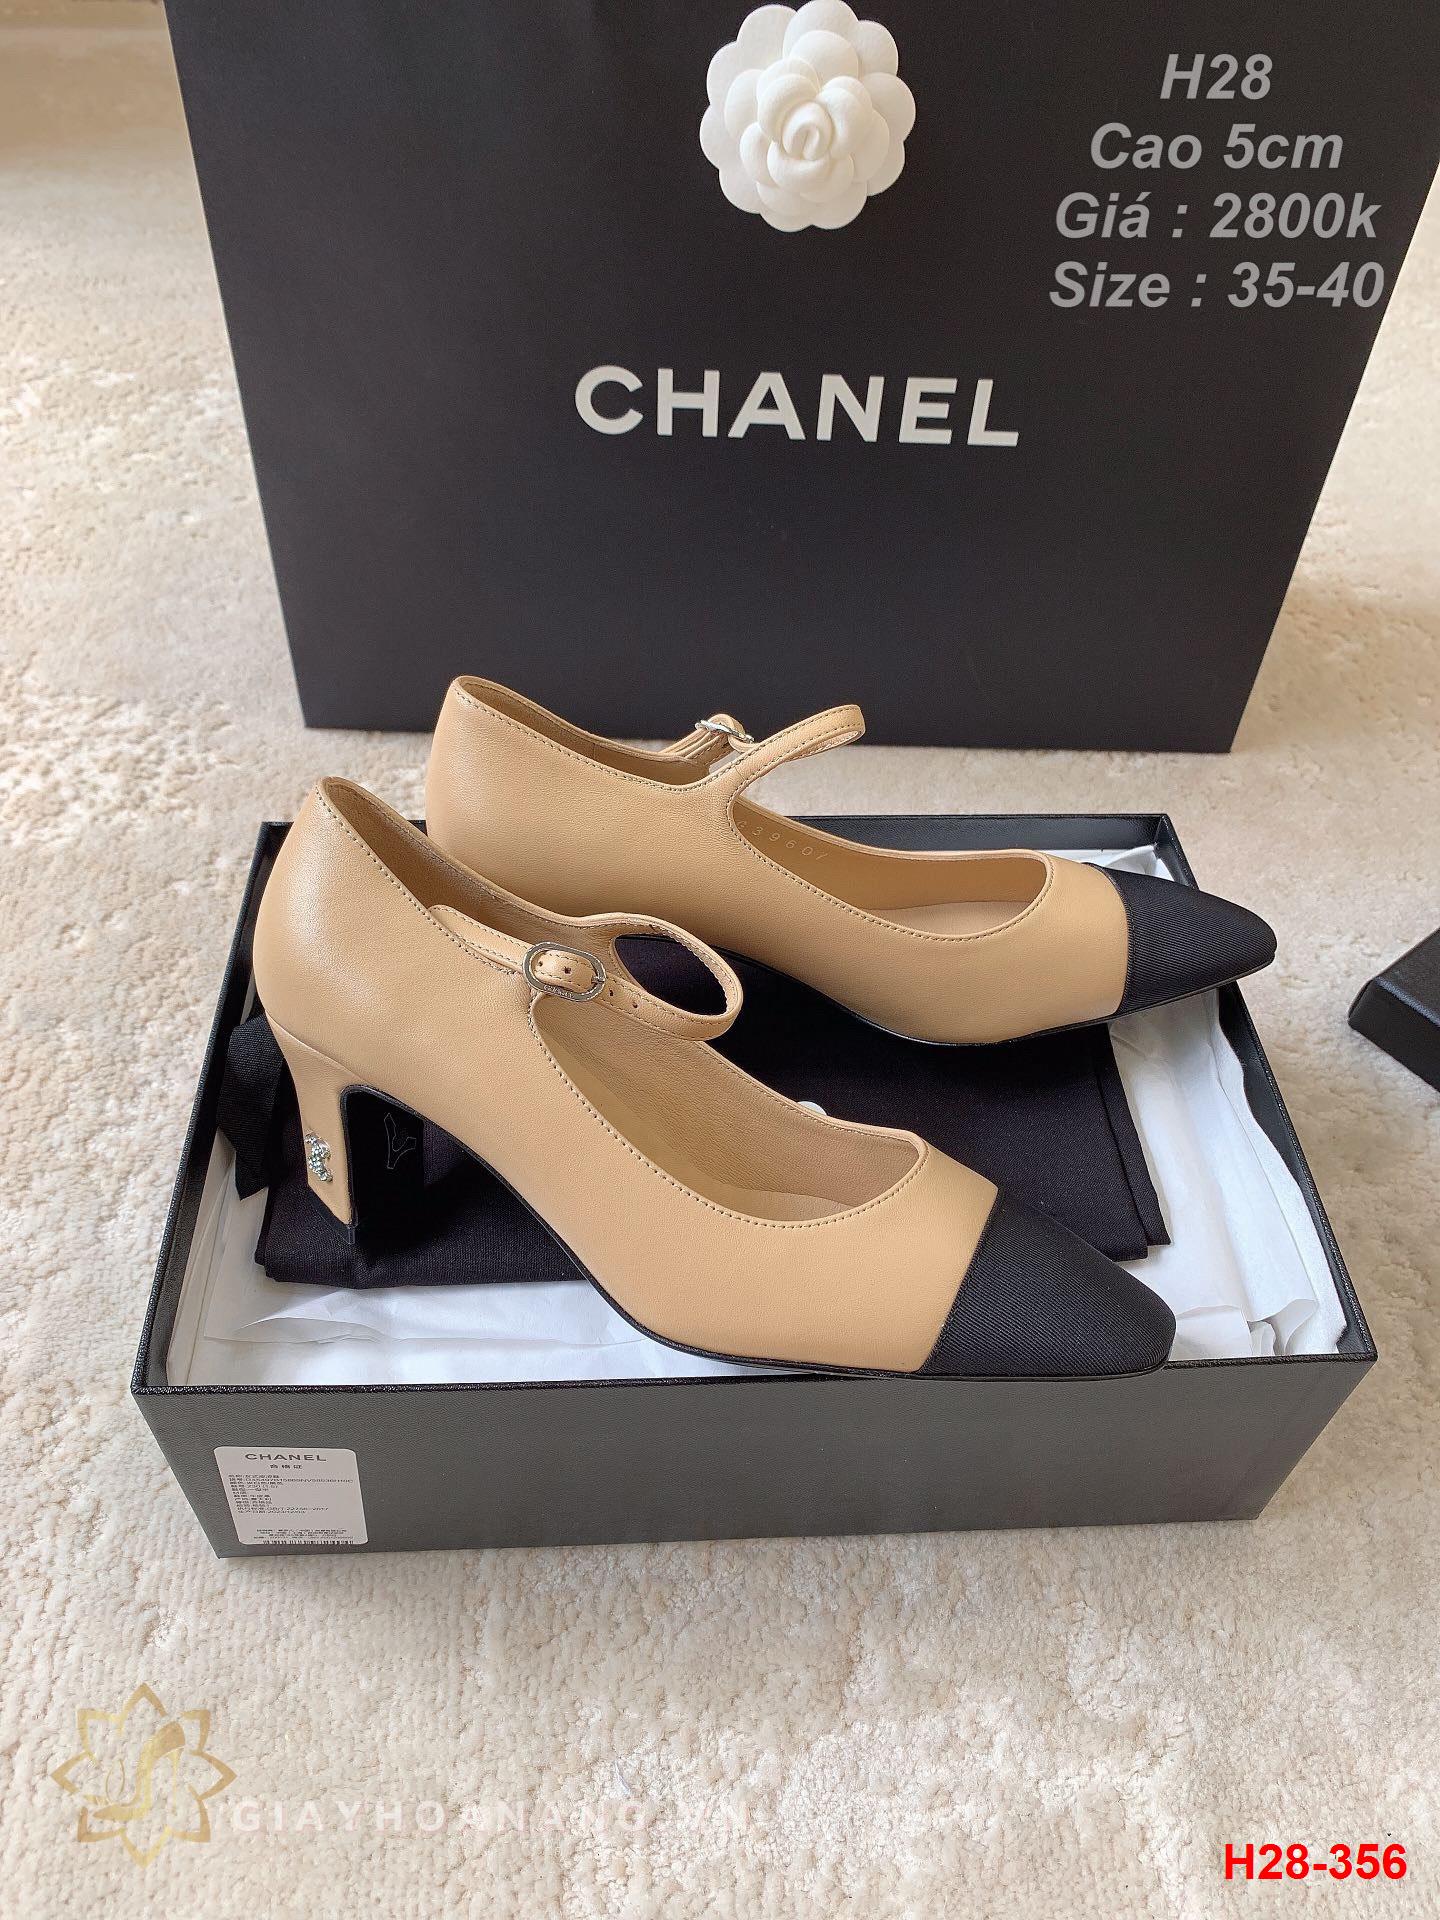 H28-356 Chanel giày cao gót 5cm siêu cấp